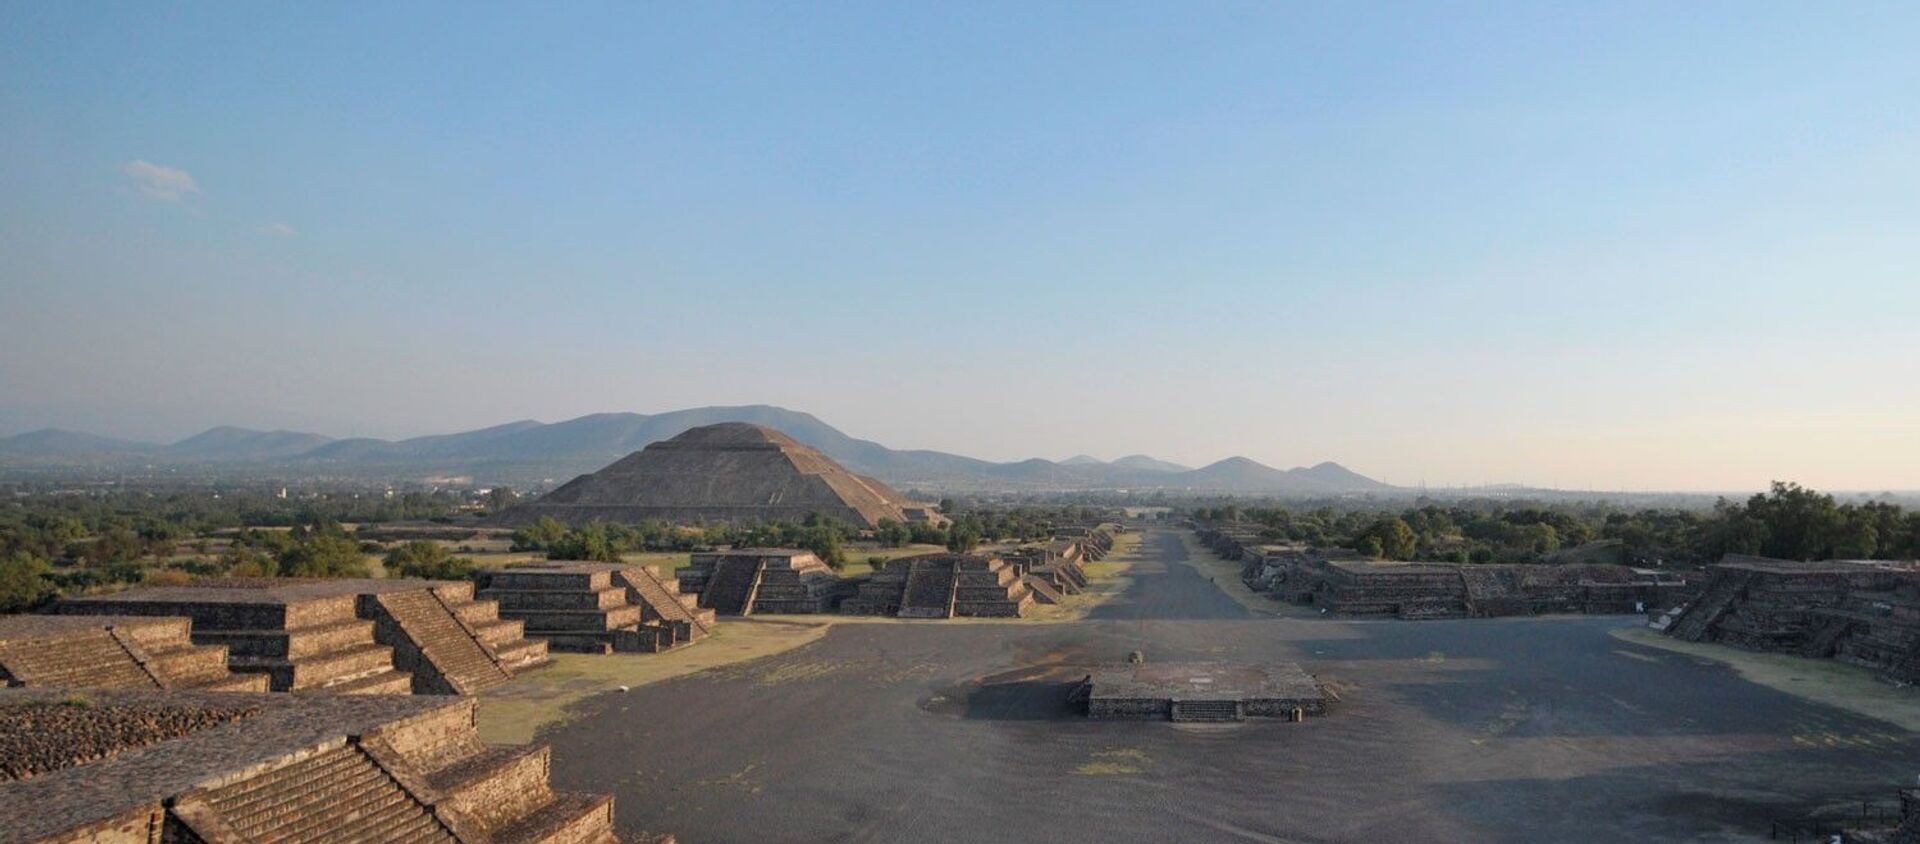 Yılda 2.6 milyon ziyaretçi ile Meksika'nın en önemli turizm simgesi olan Teotihuacan Piramitleri'nin yakınındaki özel lunapark inşaatı nedeniyle UNESCO Dünya Mirası Listesi’nden çıkarılabileceği bildirildi. - Sputnik Türkiye, 1920, 27.05.2021